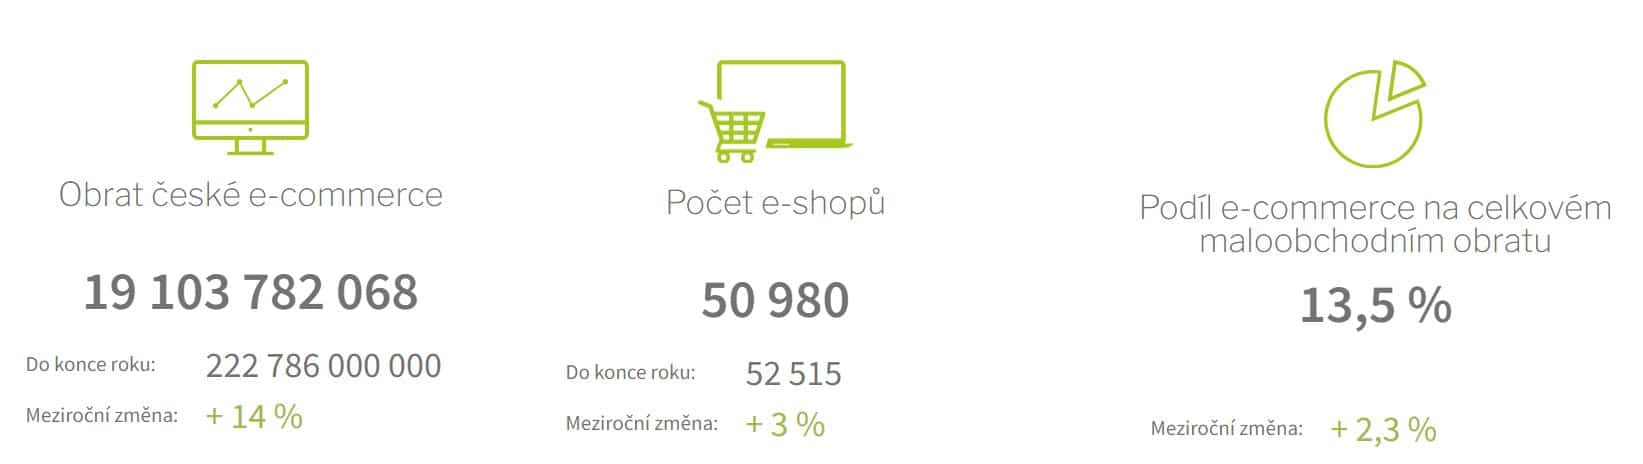 co je ecommerce - statistiky ČR